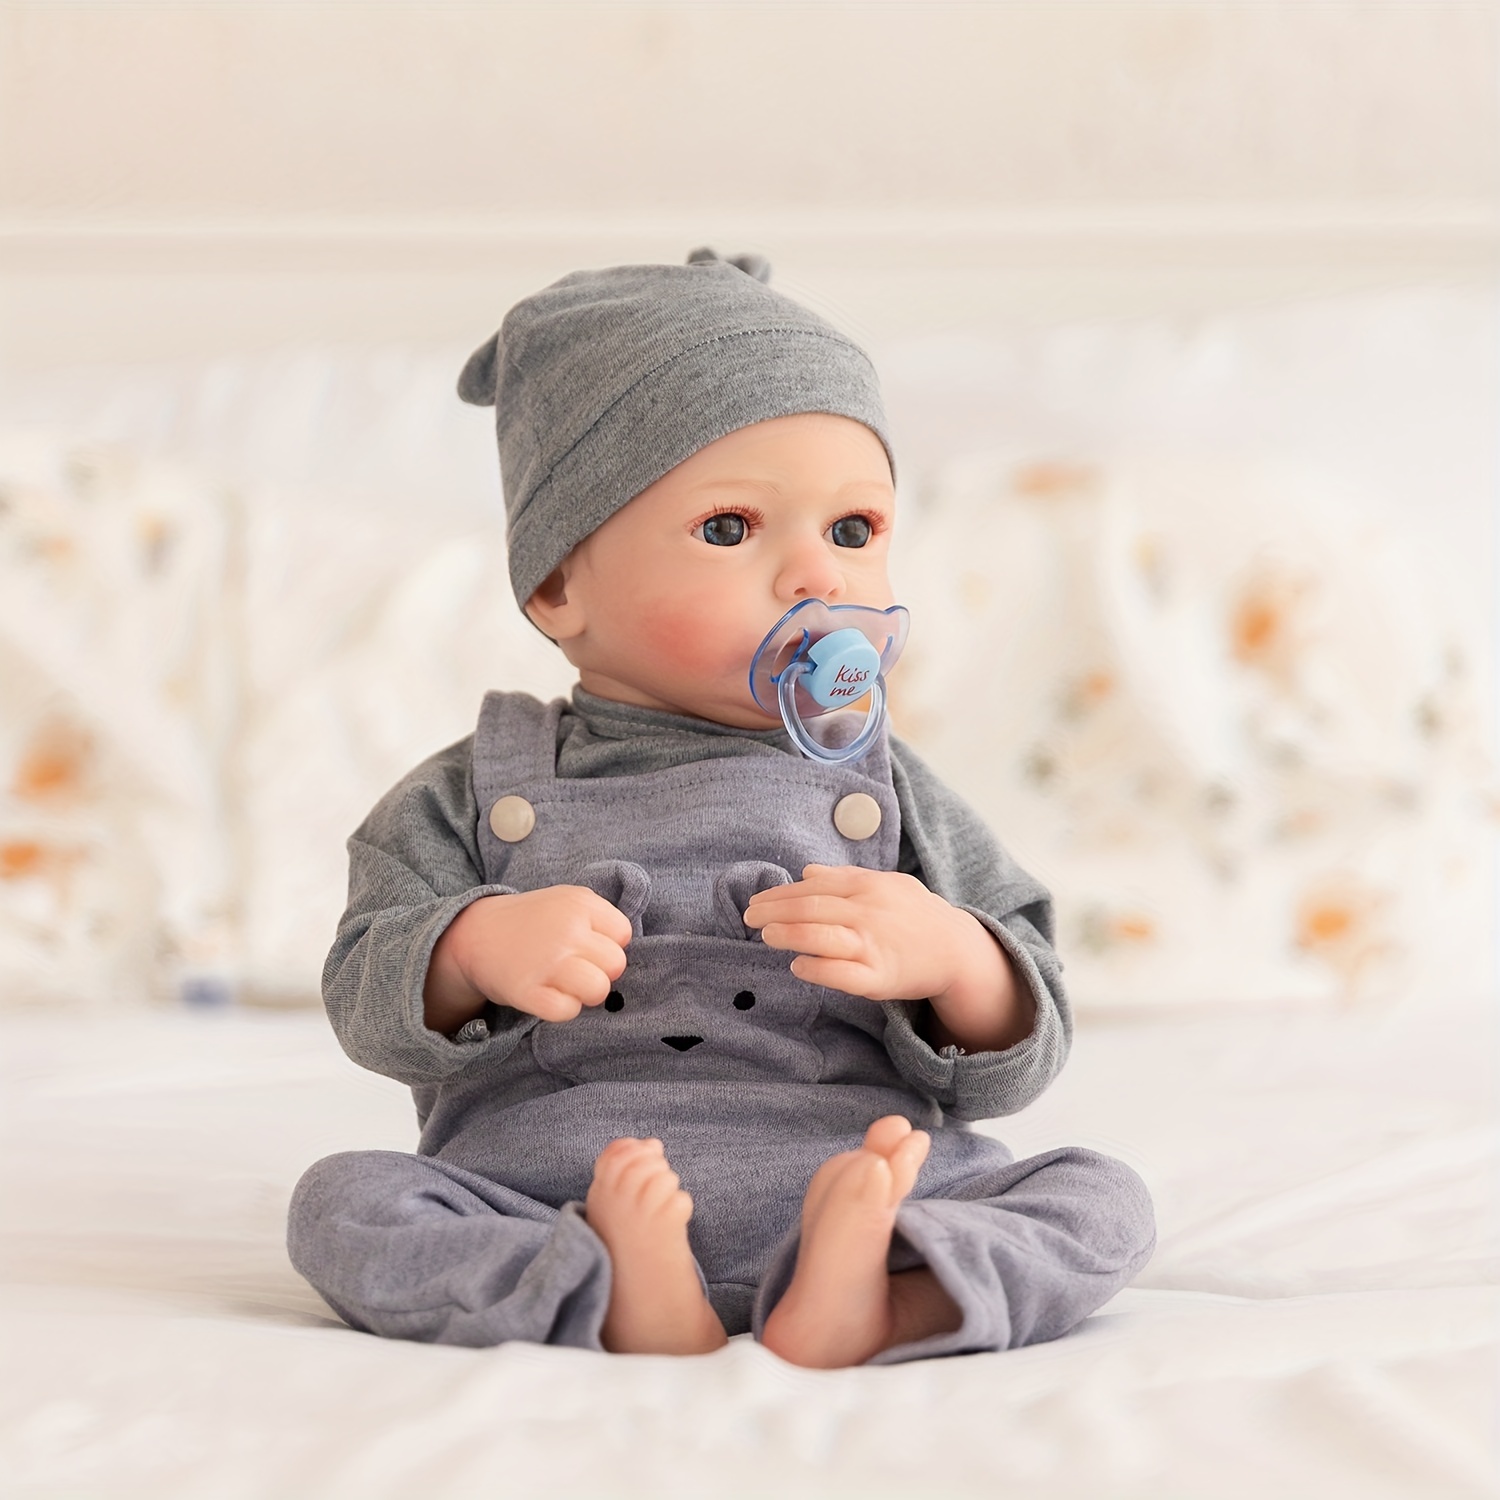 Bebes Reborn muñecas realistas baby Doll silicona suave cuerpo completo  73,49 €